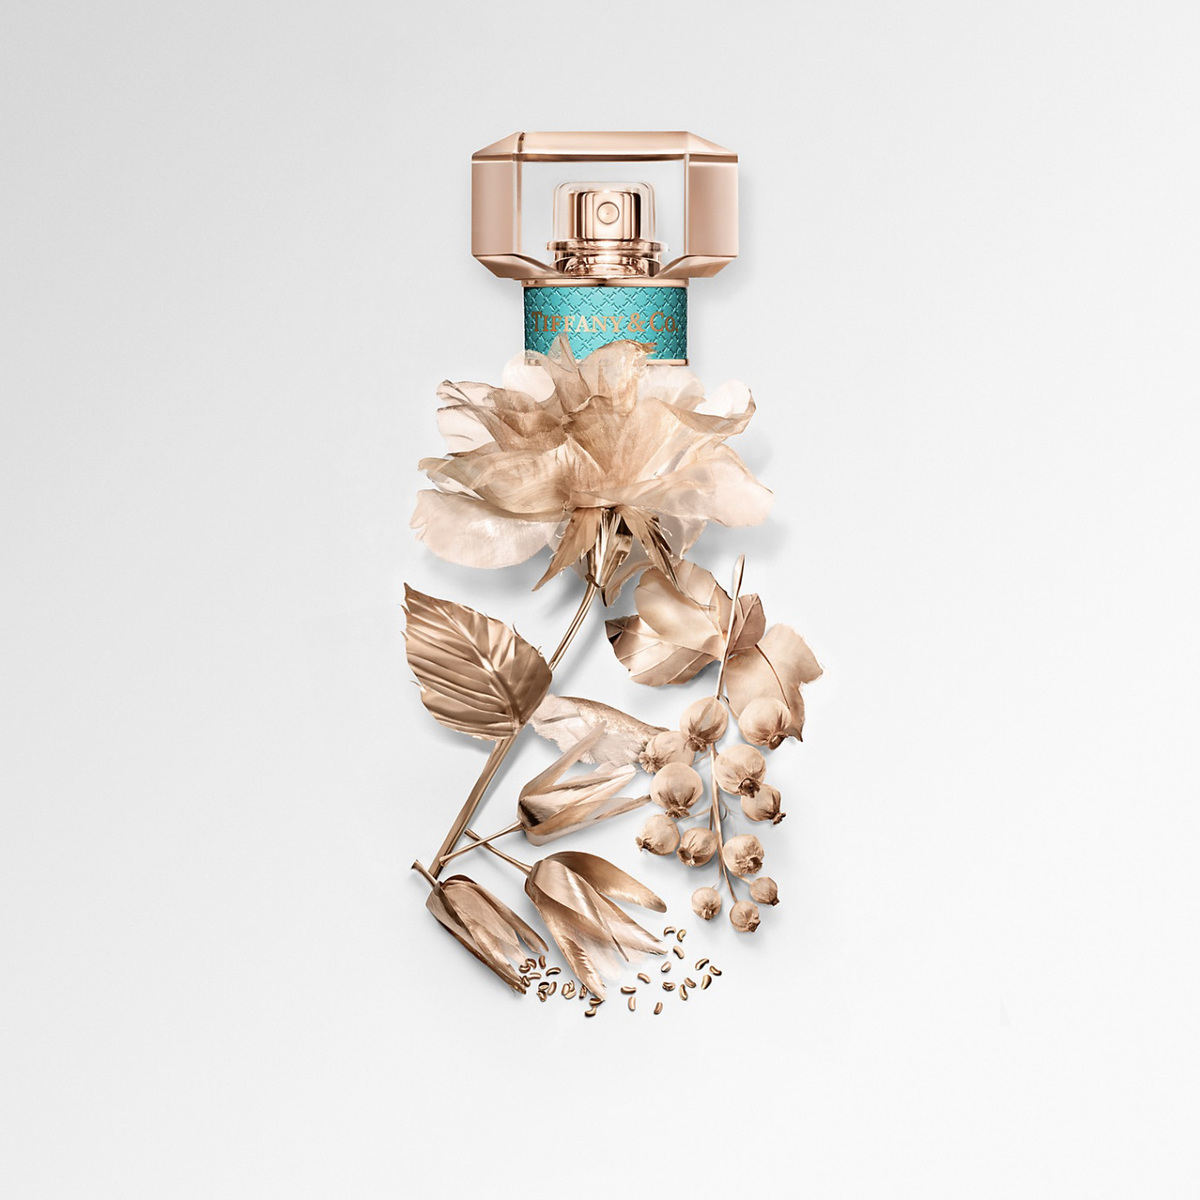 Rose Gold Eau De Parfum Launched by Tiffany & Co